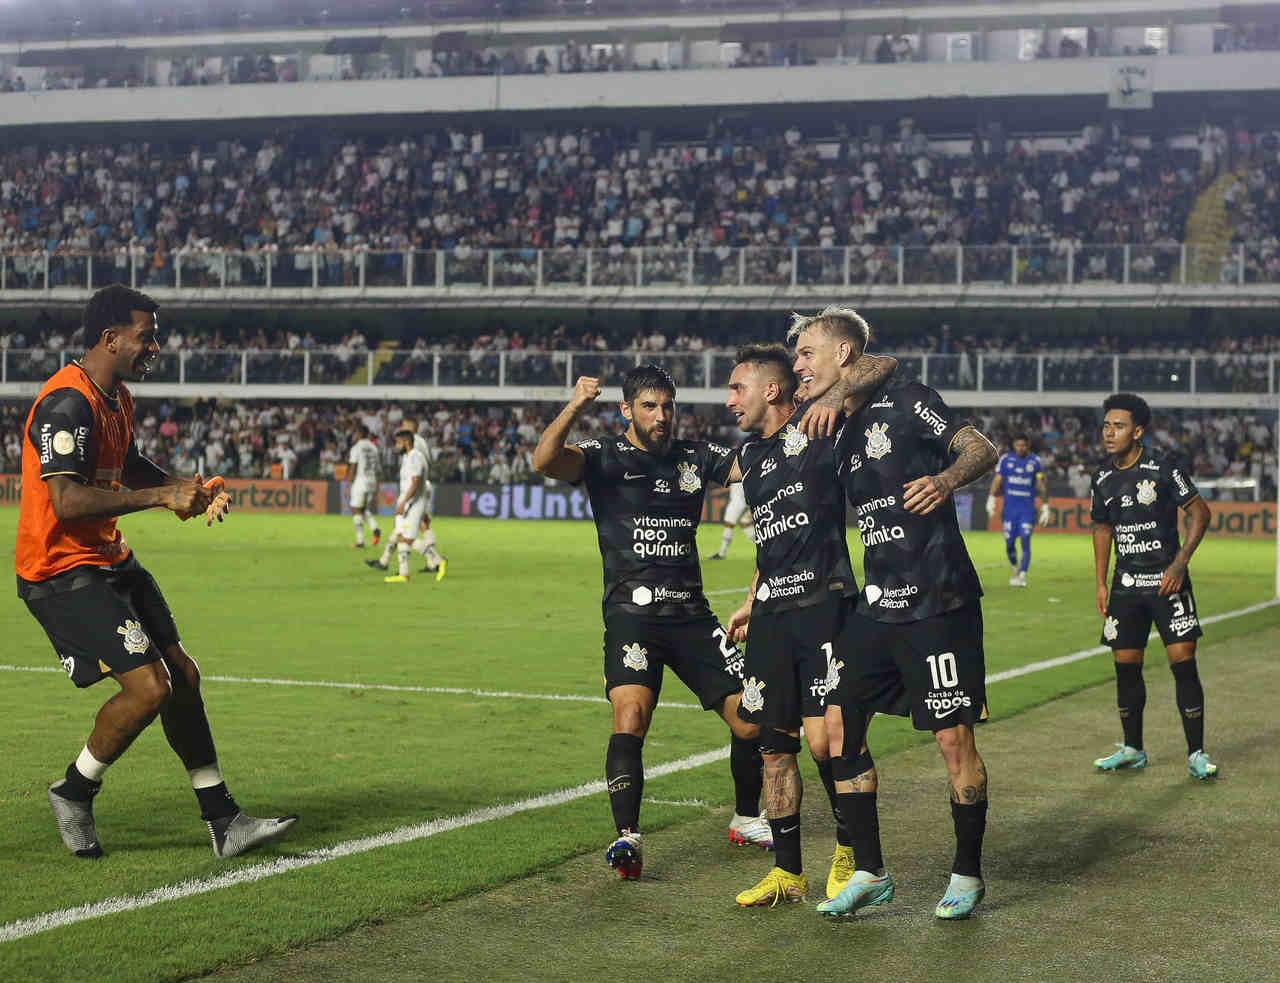 Róer Guedes - Santos 0 x 1 Corinthians